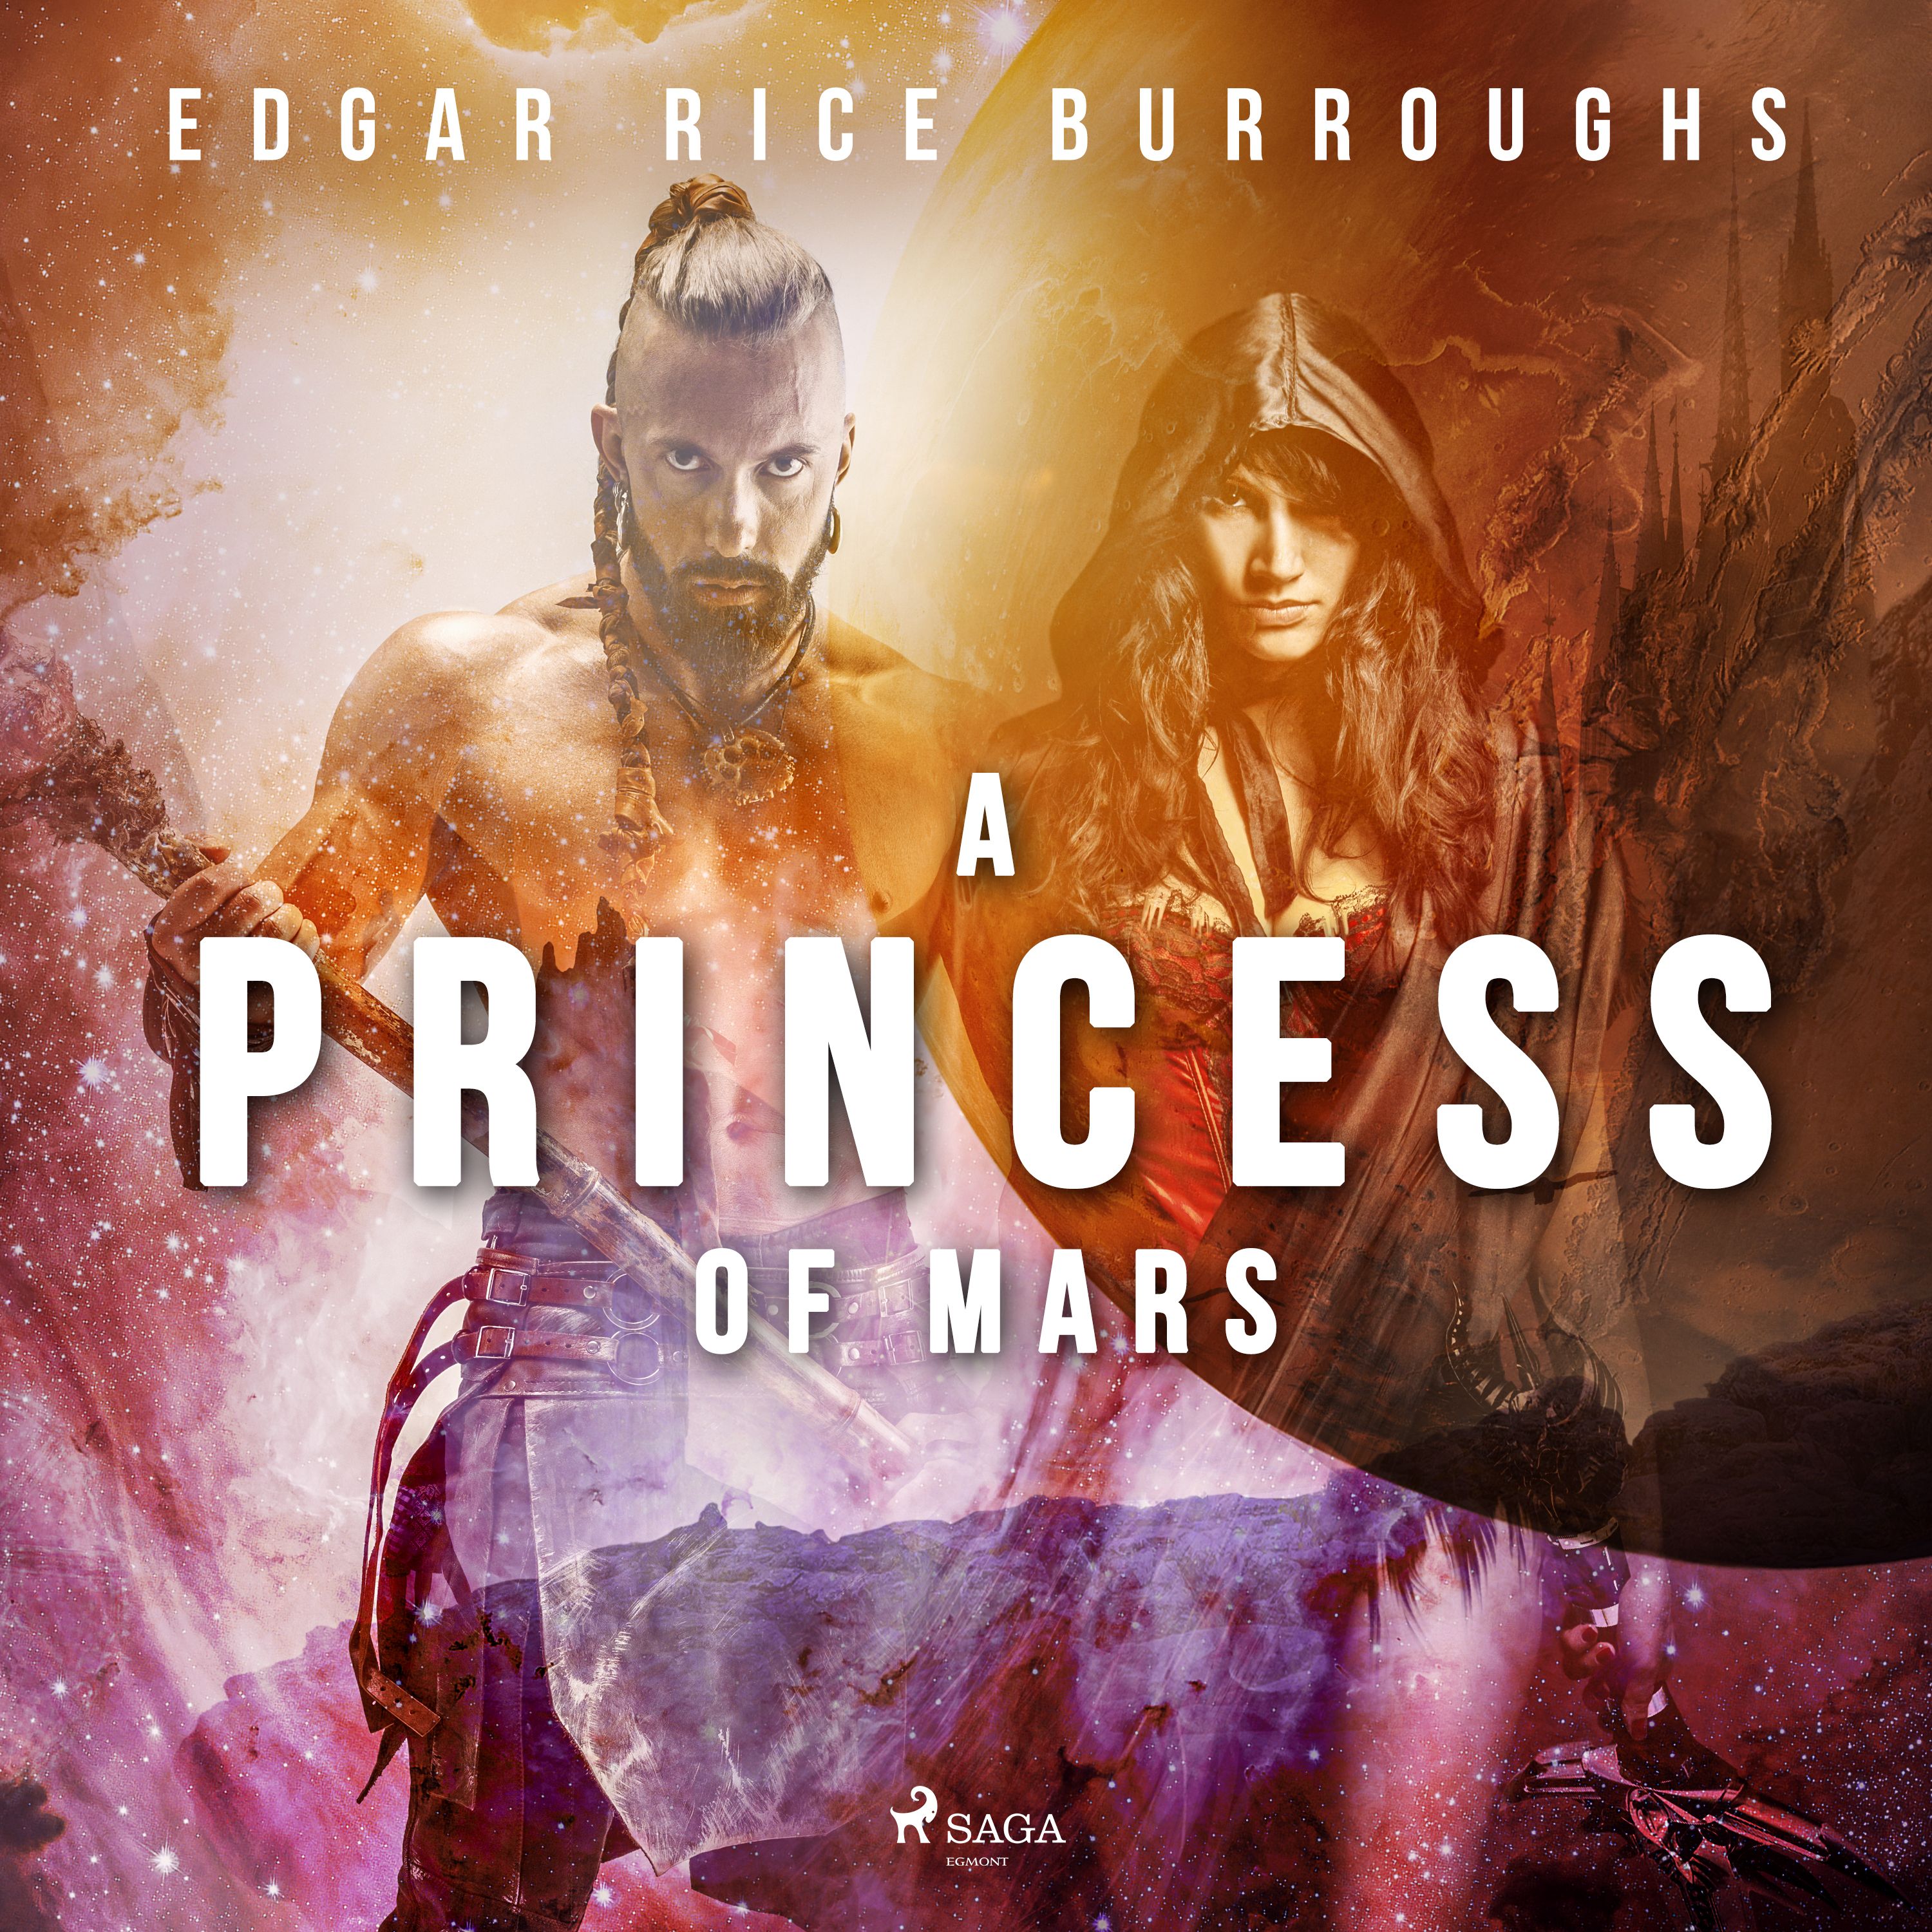 A Princess of Mars, ljudbok av Edgar Rice Burroughs